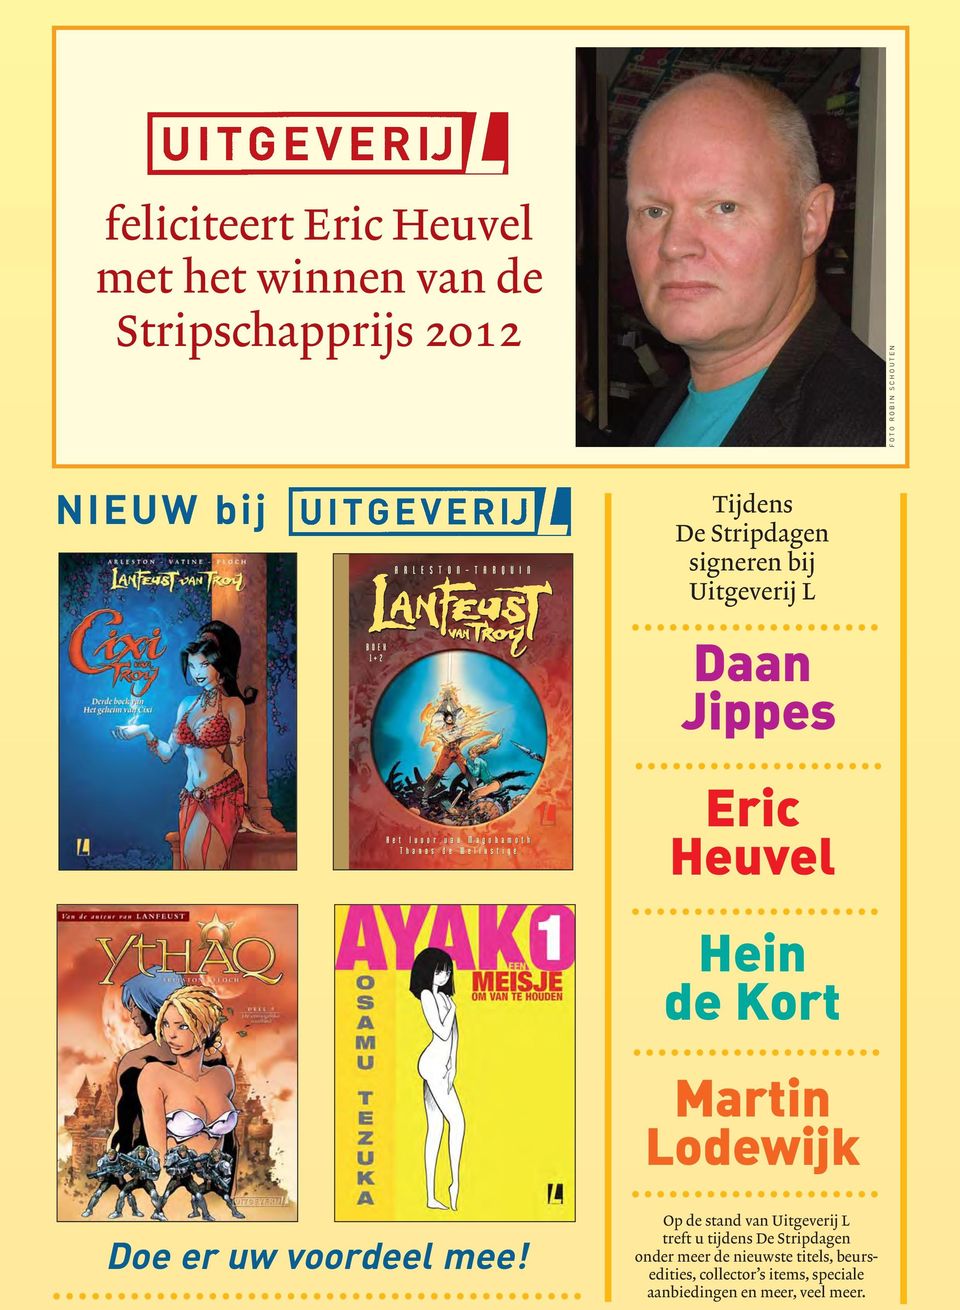 Tijdens De Stripdagen signeren bij Uitgeverij L Daan Jippes Eric Heuvel Hein de Kort Martin Lodewijk Doe er uw voordeel mee!